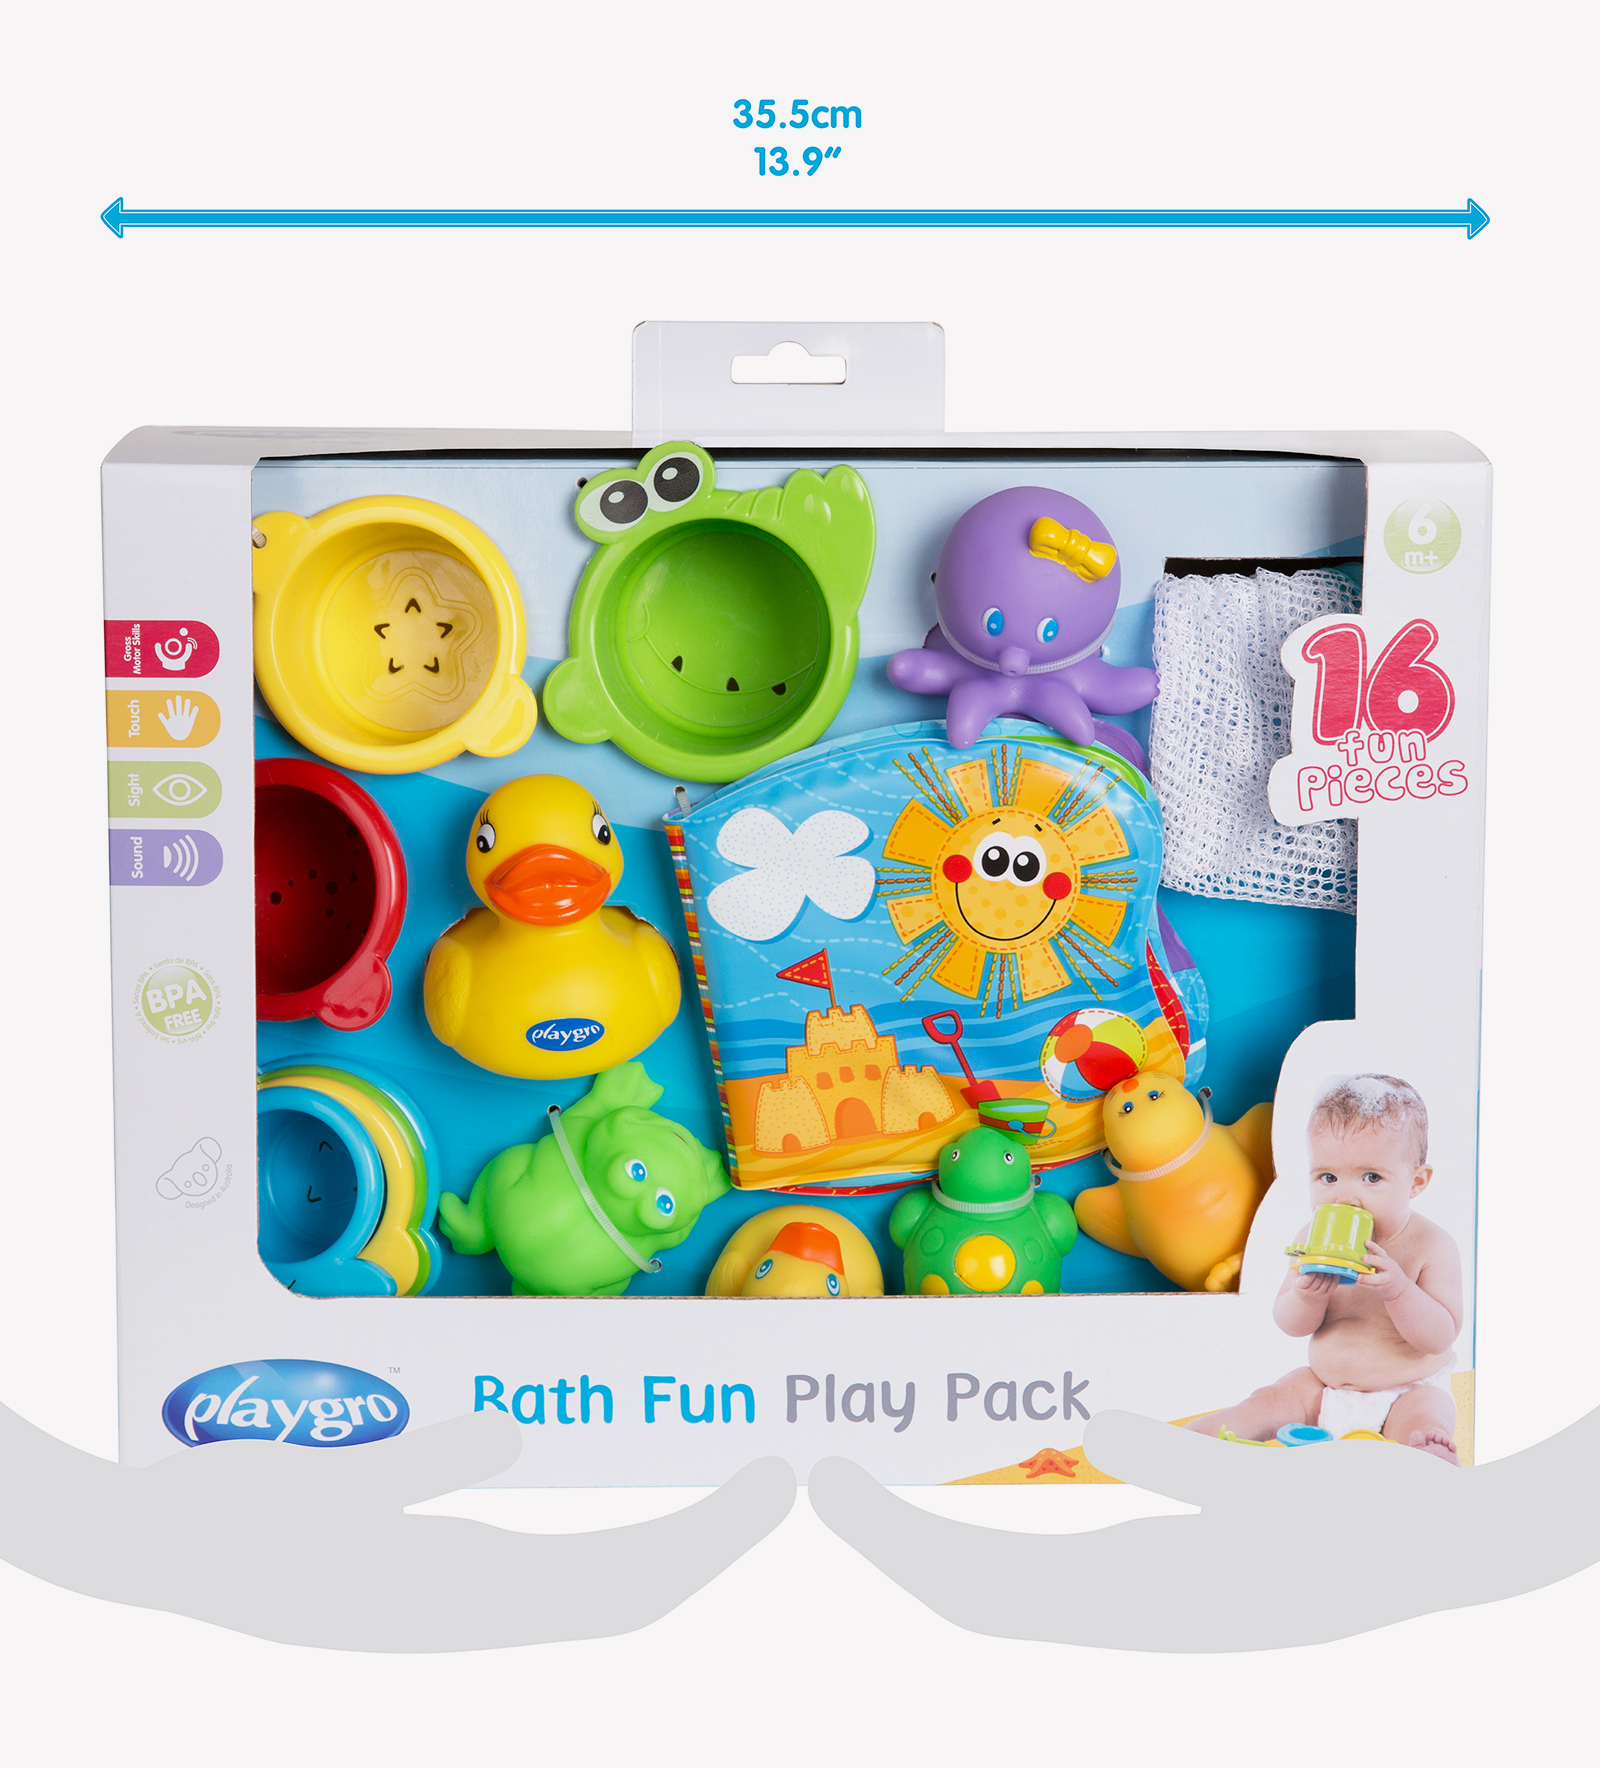 Bath Fun Play Pack 4